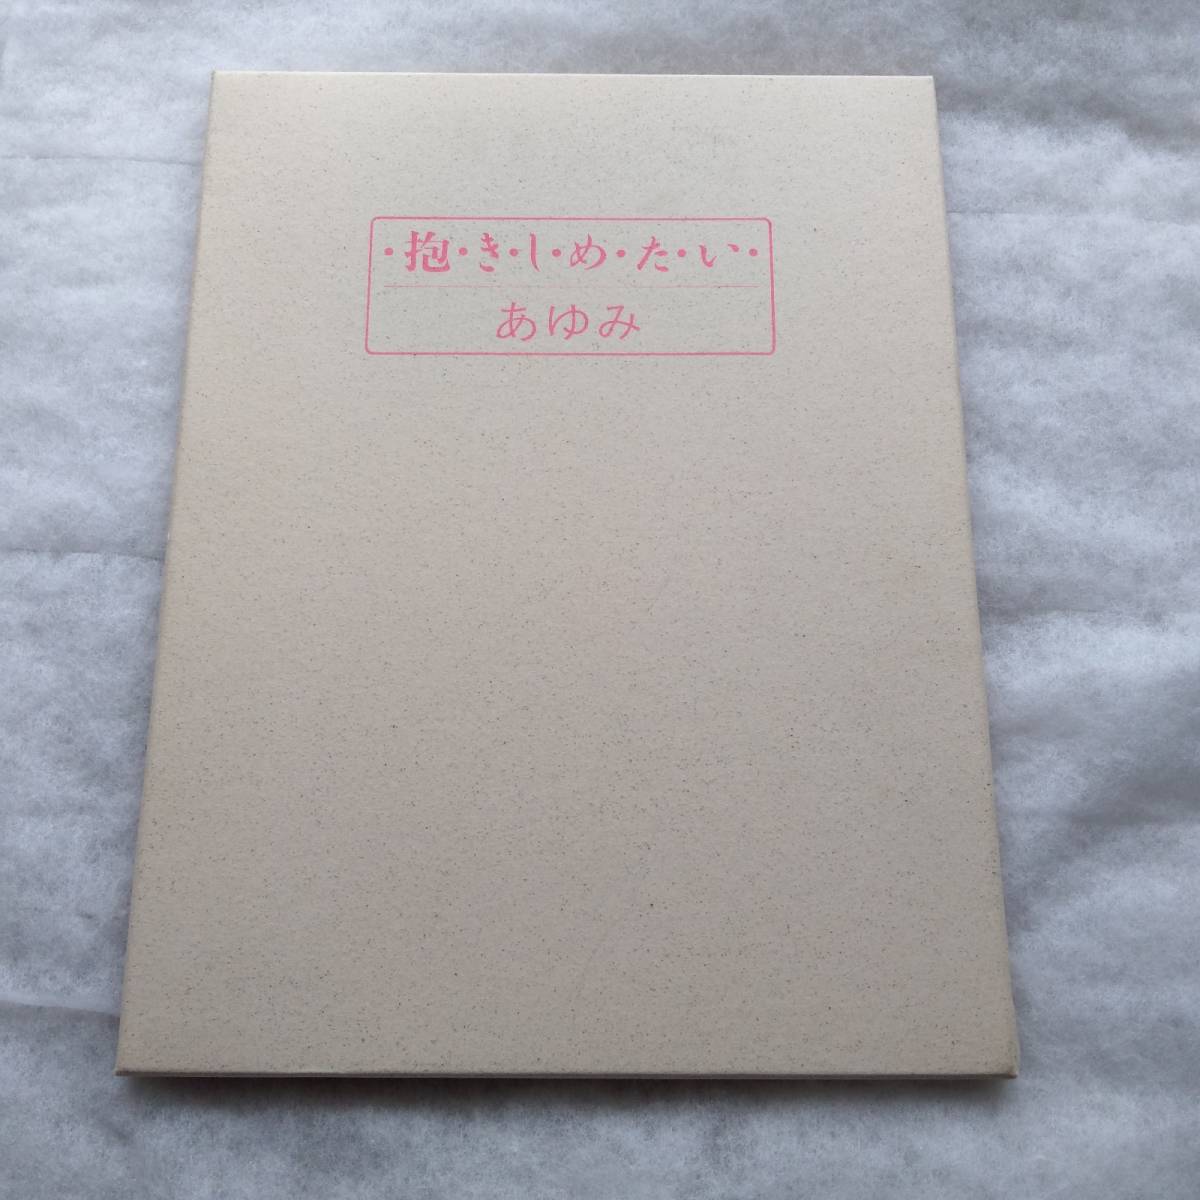 中村あゆみ 1987 抱きしめたい TOKYO 10 DAYS ツアーパンフ(ポスターブック) メモリアルチケット付き 送料込み_画像2